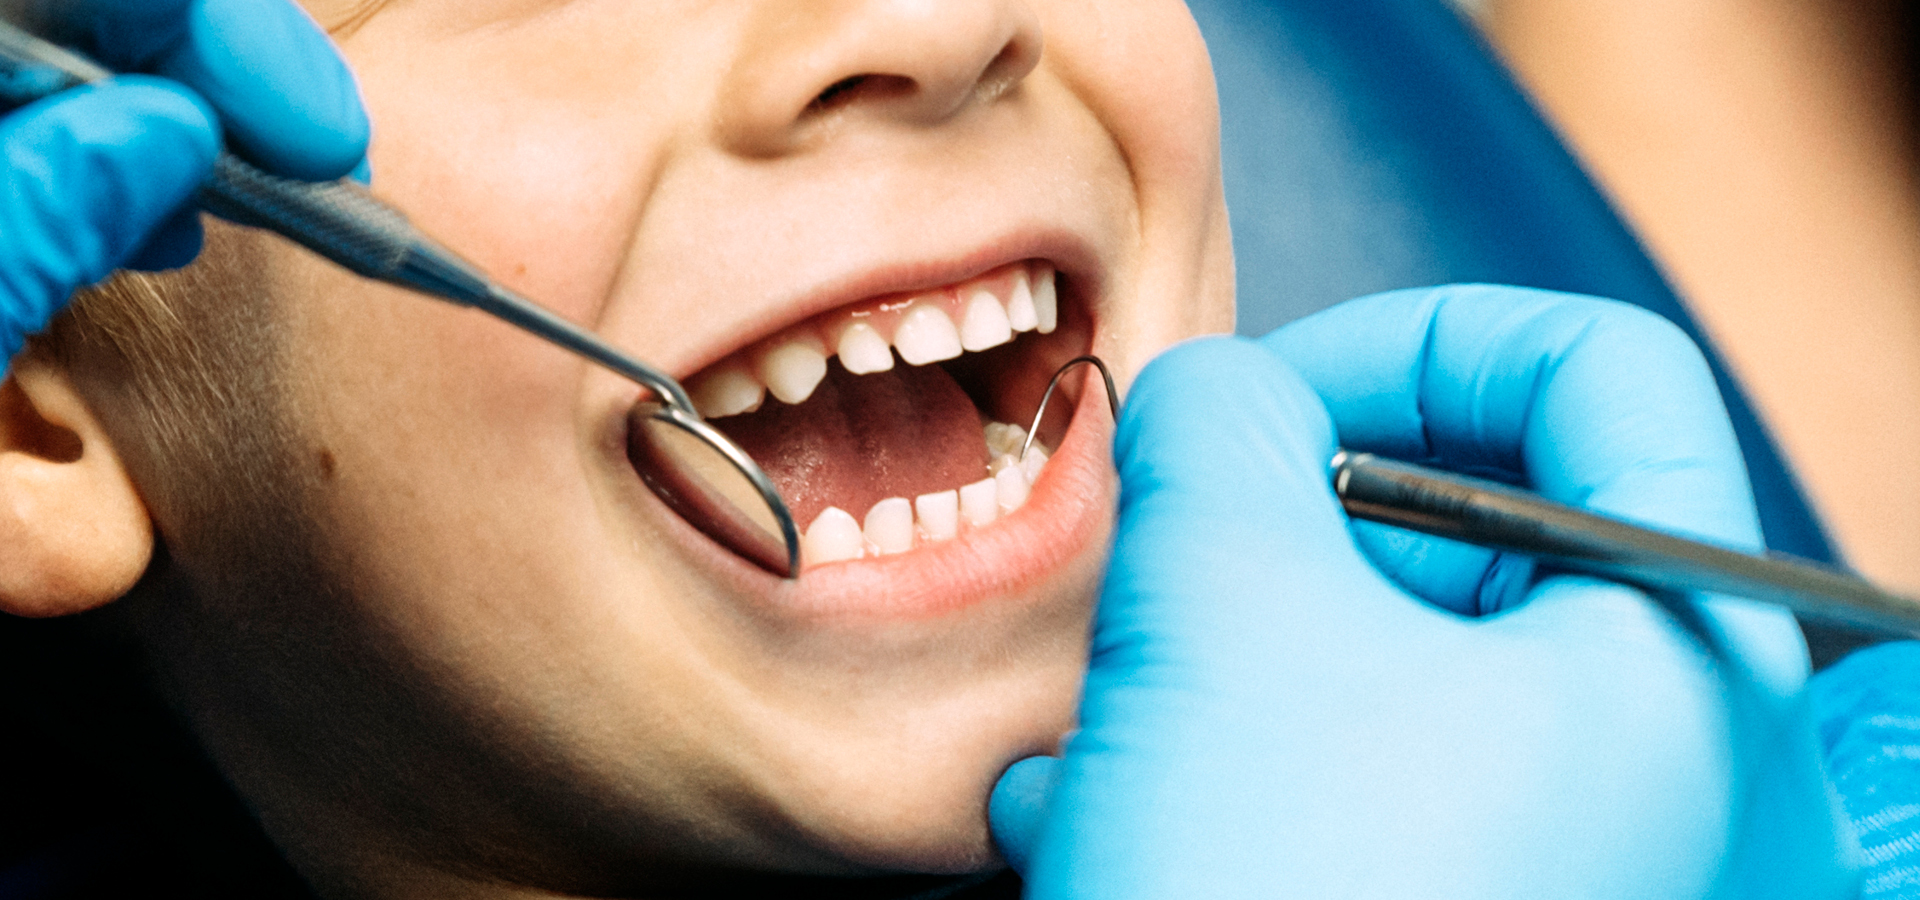 Clínica Dental Uradent tratamientos infantiles en Uradent odontopediatría